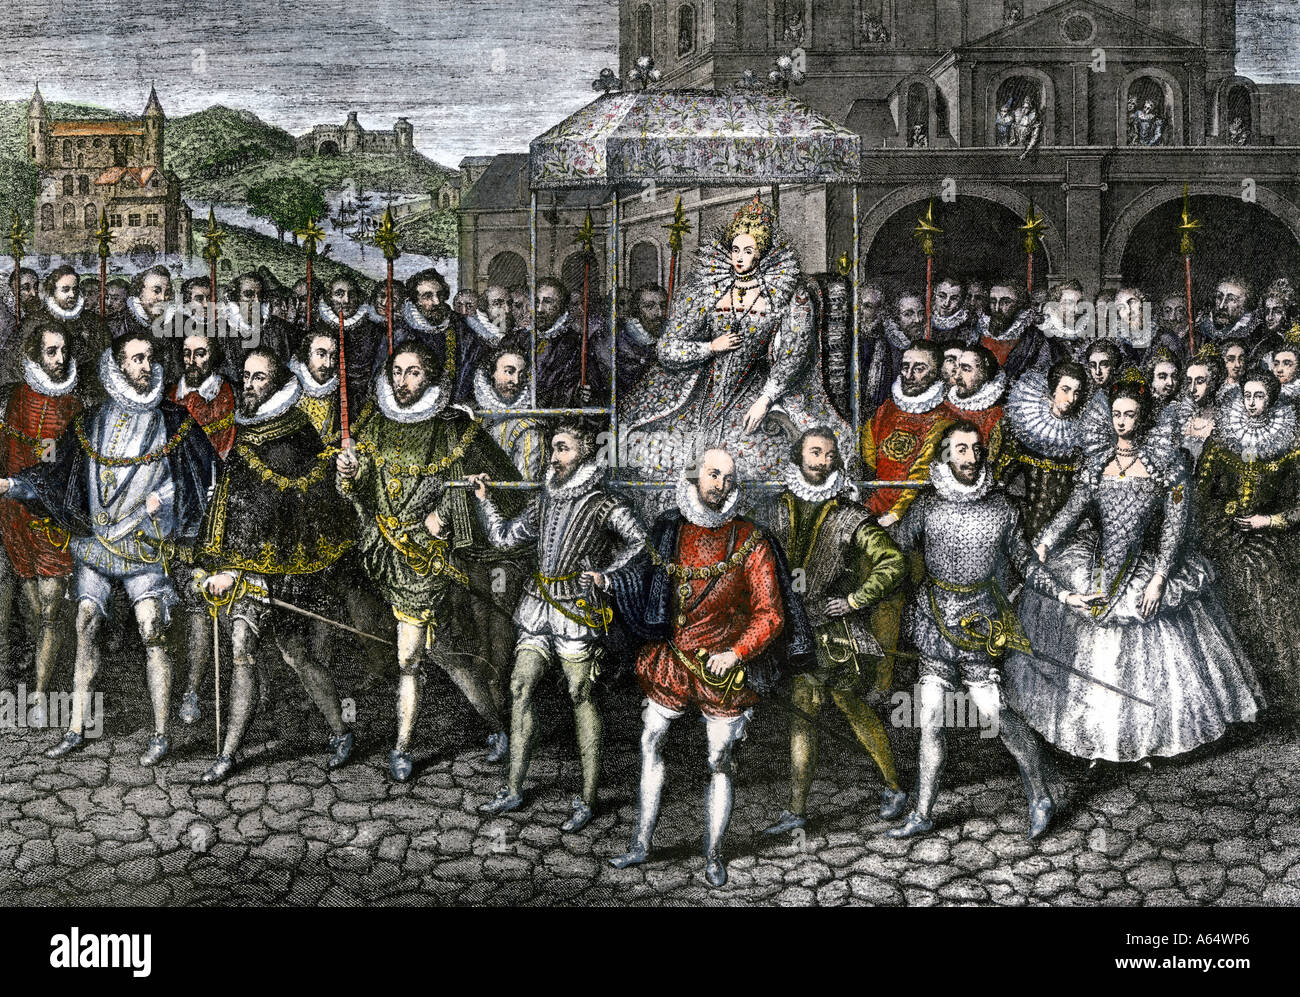 Visite de la Reine Elizabeth I de Blackfriars à Londres 1600. À la main, gravure sur bois Banque D'Images